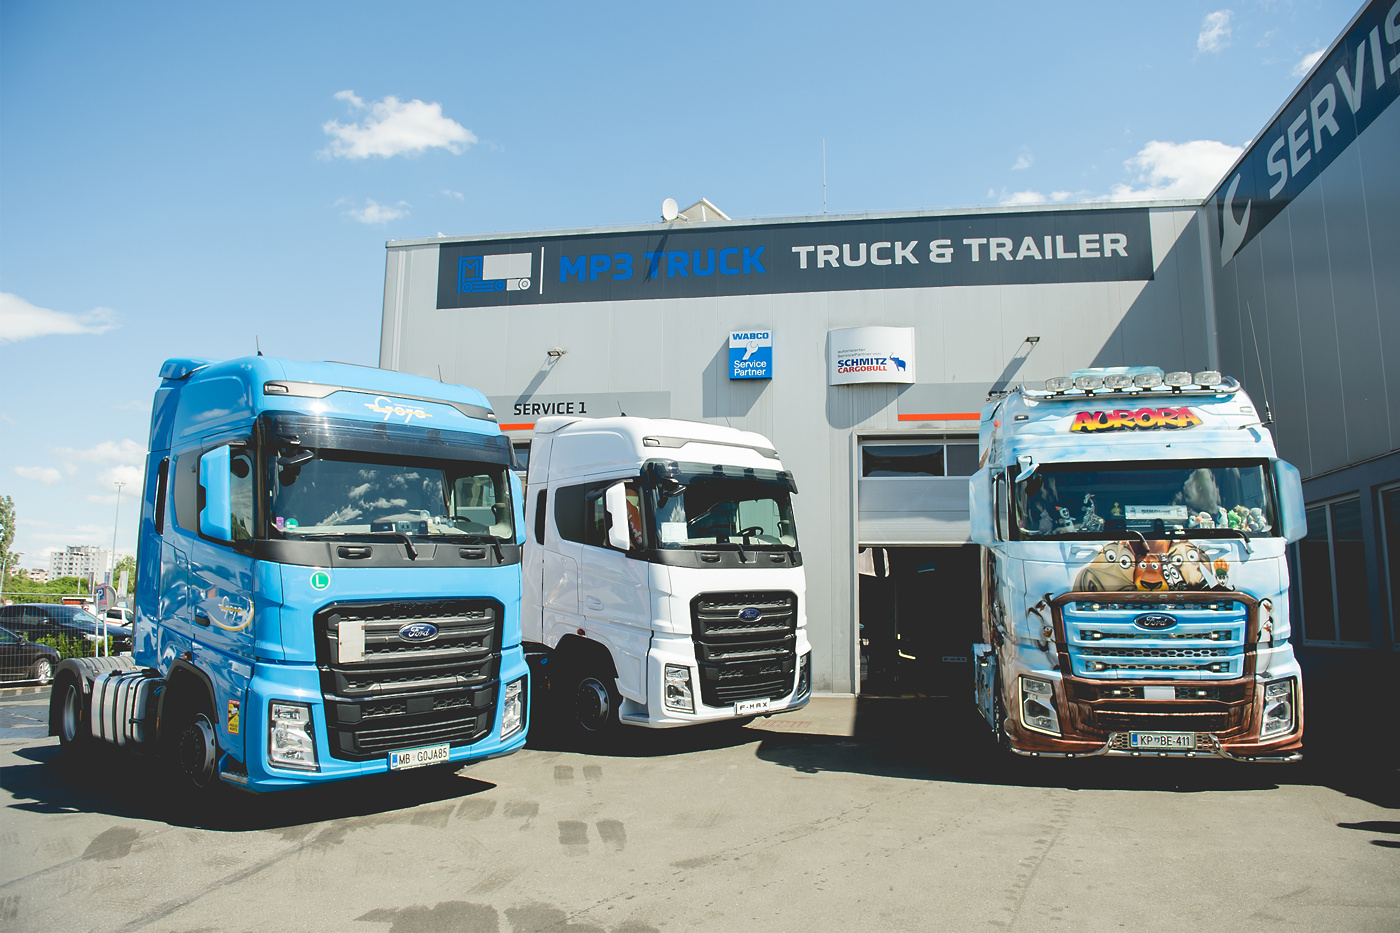 Uradno so obeležili začetek delovanja novega servisnega centra Ford Trucks v Mariboru